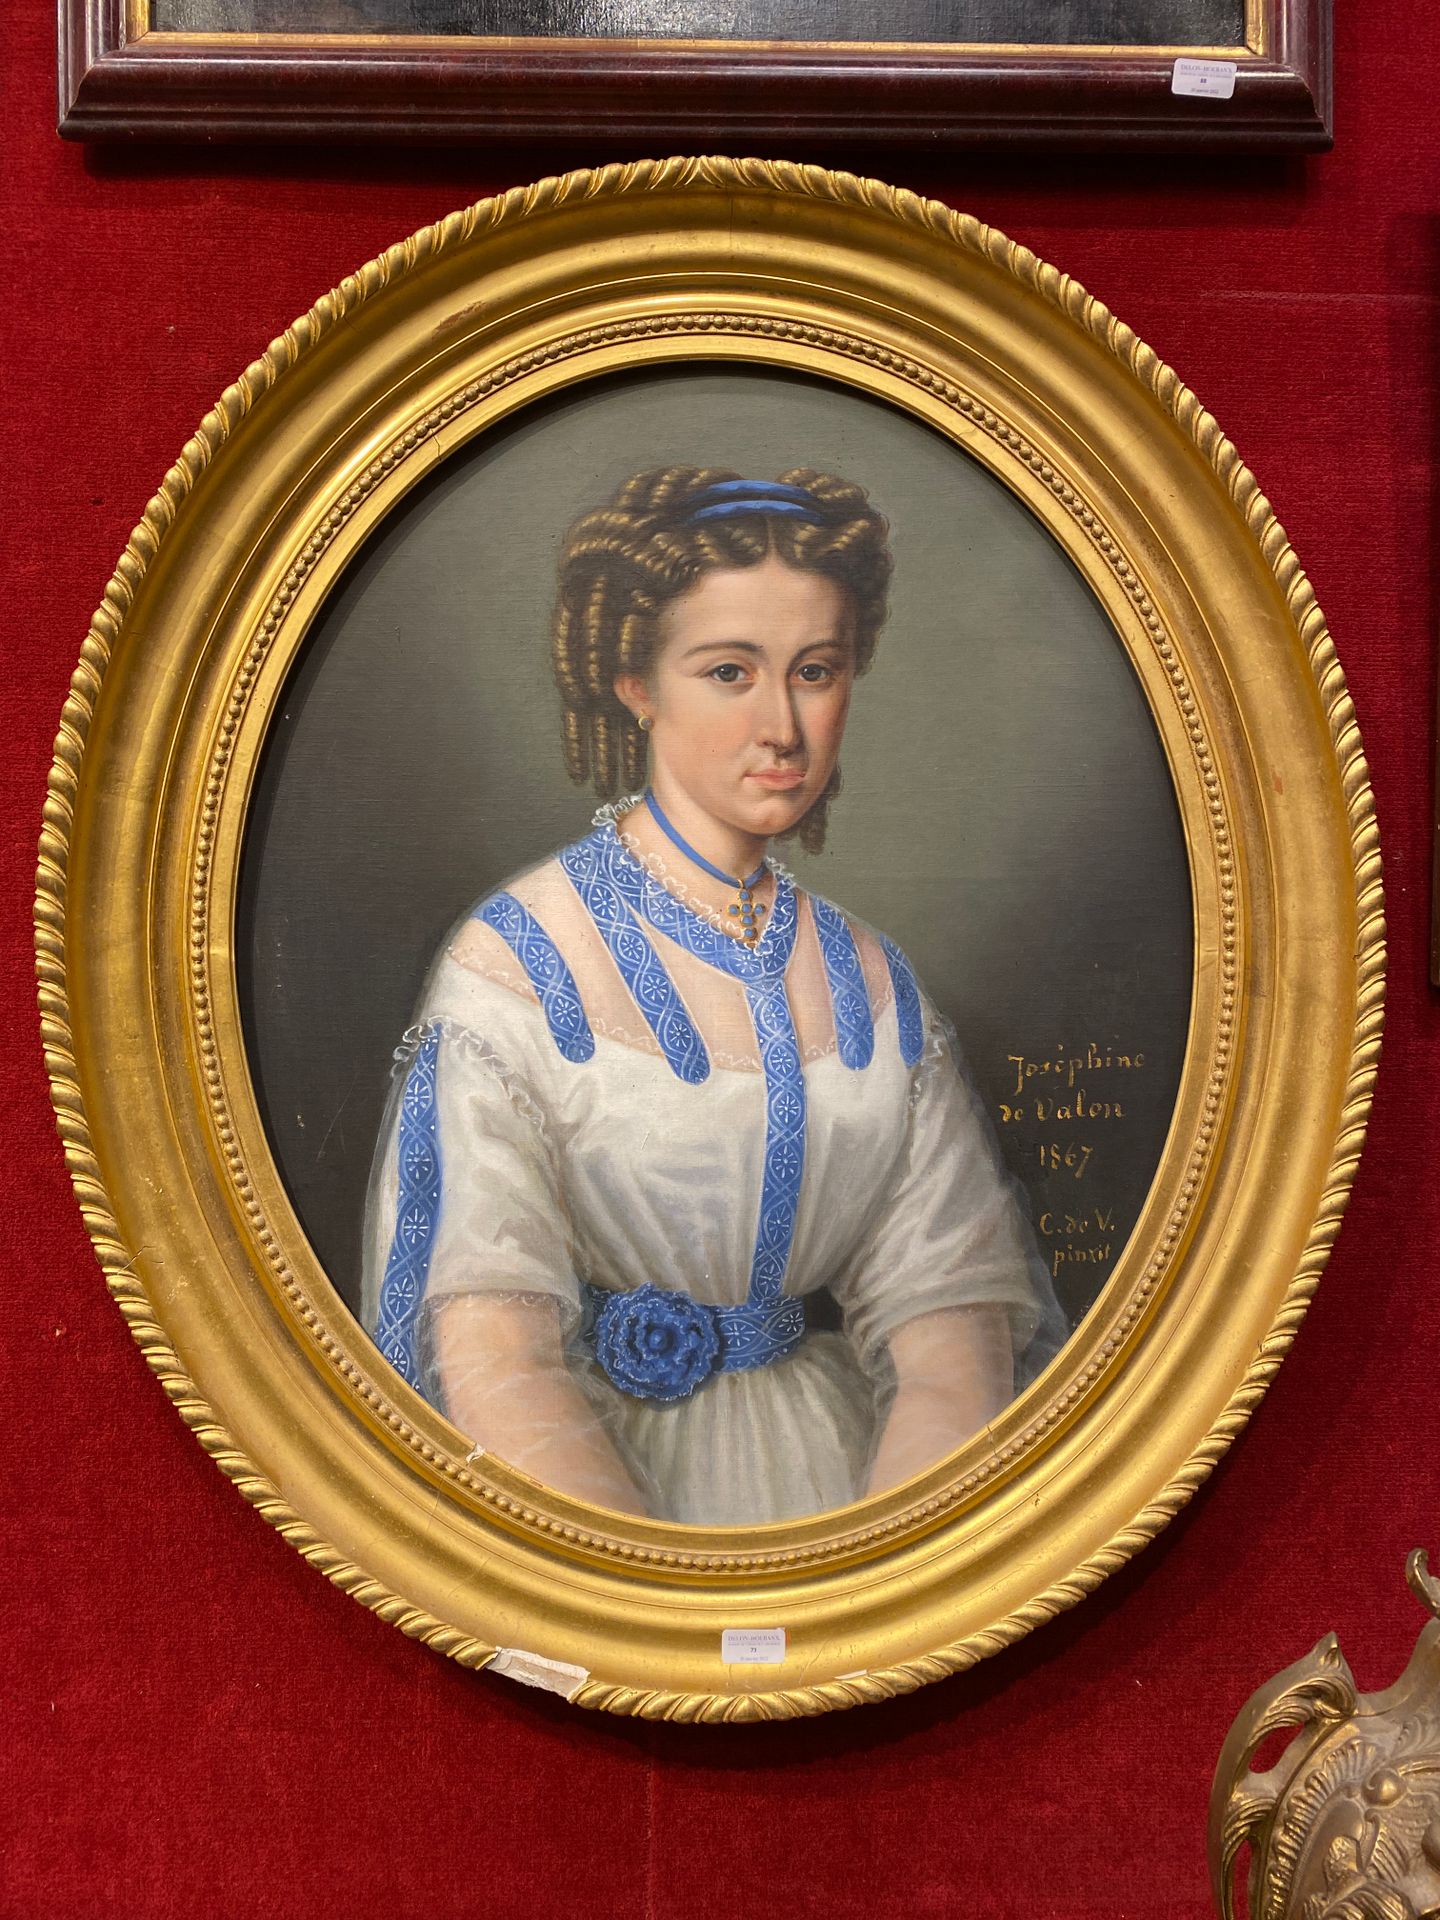 Null ESCUELA FRANCESA 1867

Retrato de Joséphine de Valon

Lienzo ovalado, en su&hellip;